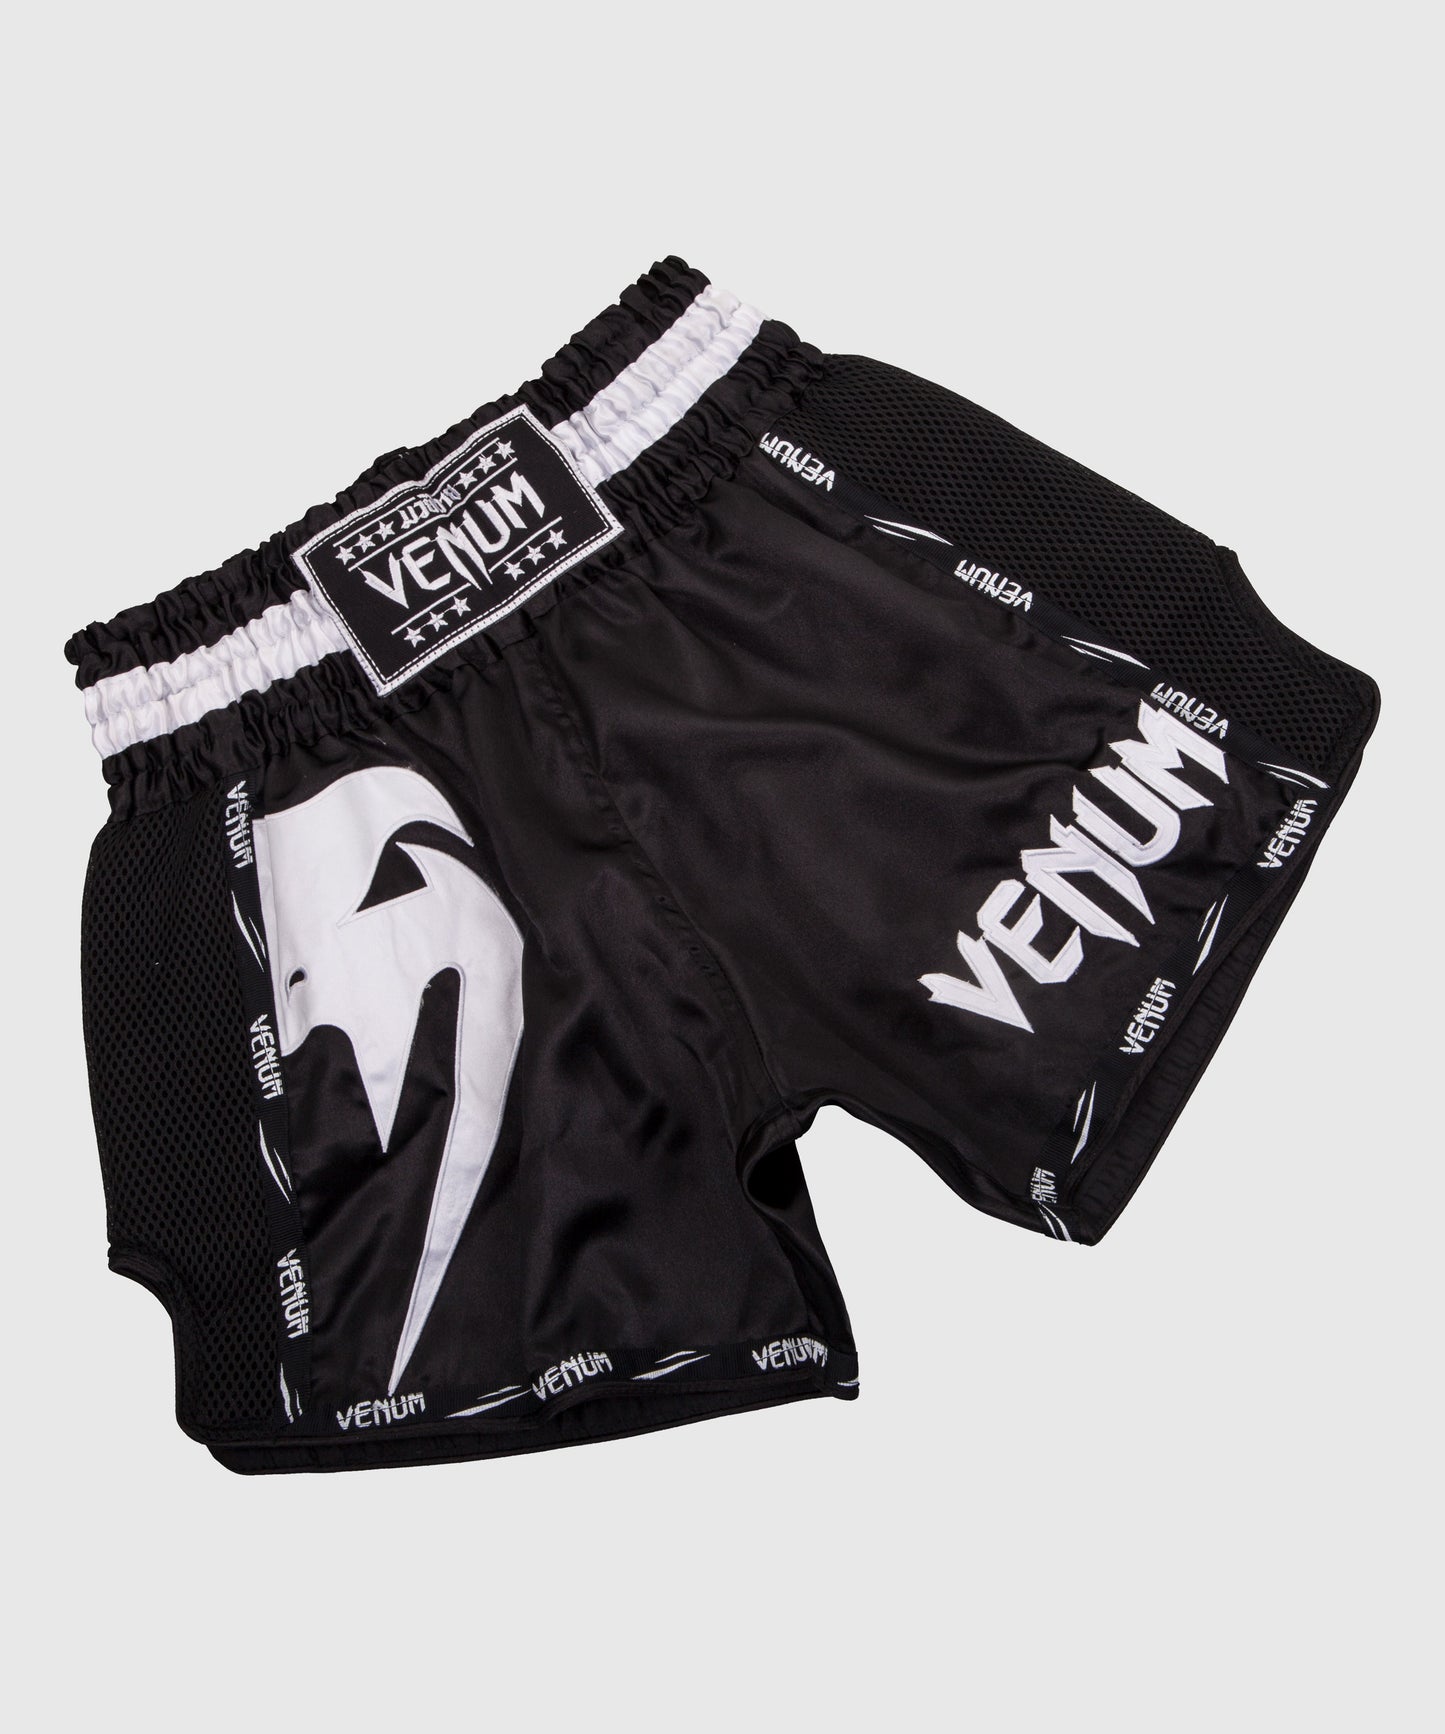 Venum Giant Muay Thai Shorts - Black/White